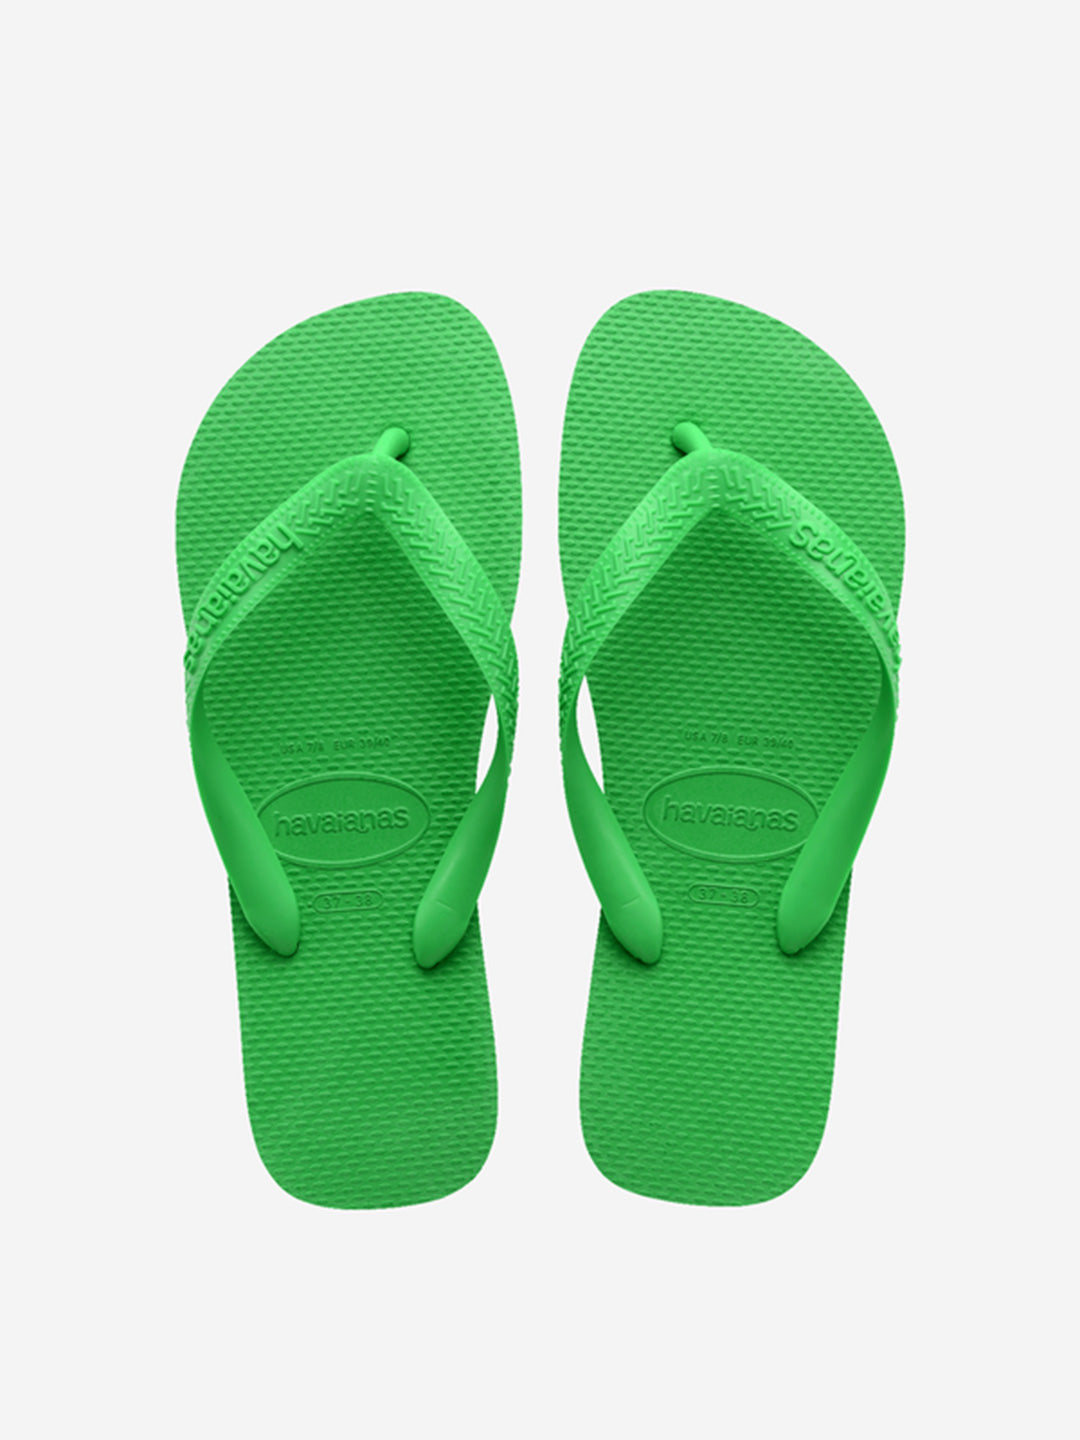 Havaianas Top green flip flops